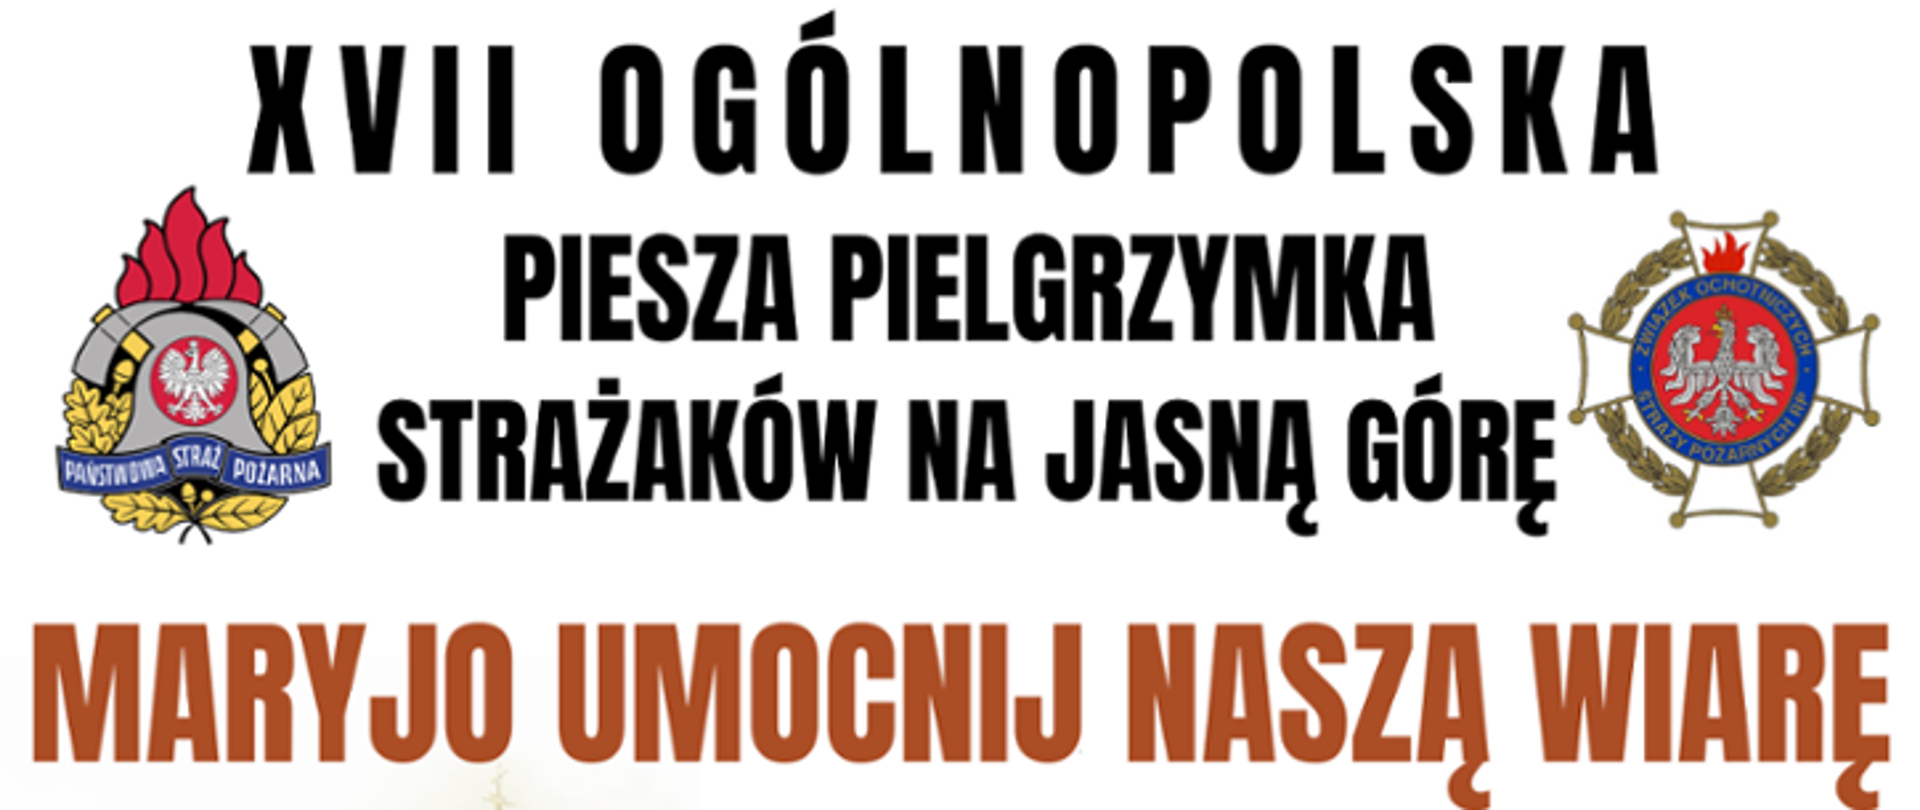 XVII Ogólnopolska Piesza Pielgrzymka Strażaków na Jasną Górę, po lewej logo PSP po prawej OSP pod nimi napis Maryjo Umocnij Naszą Wiarę